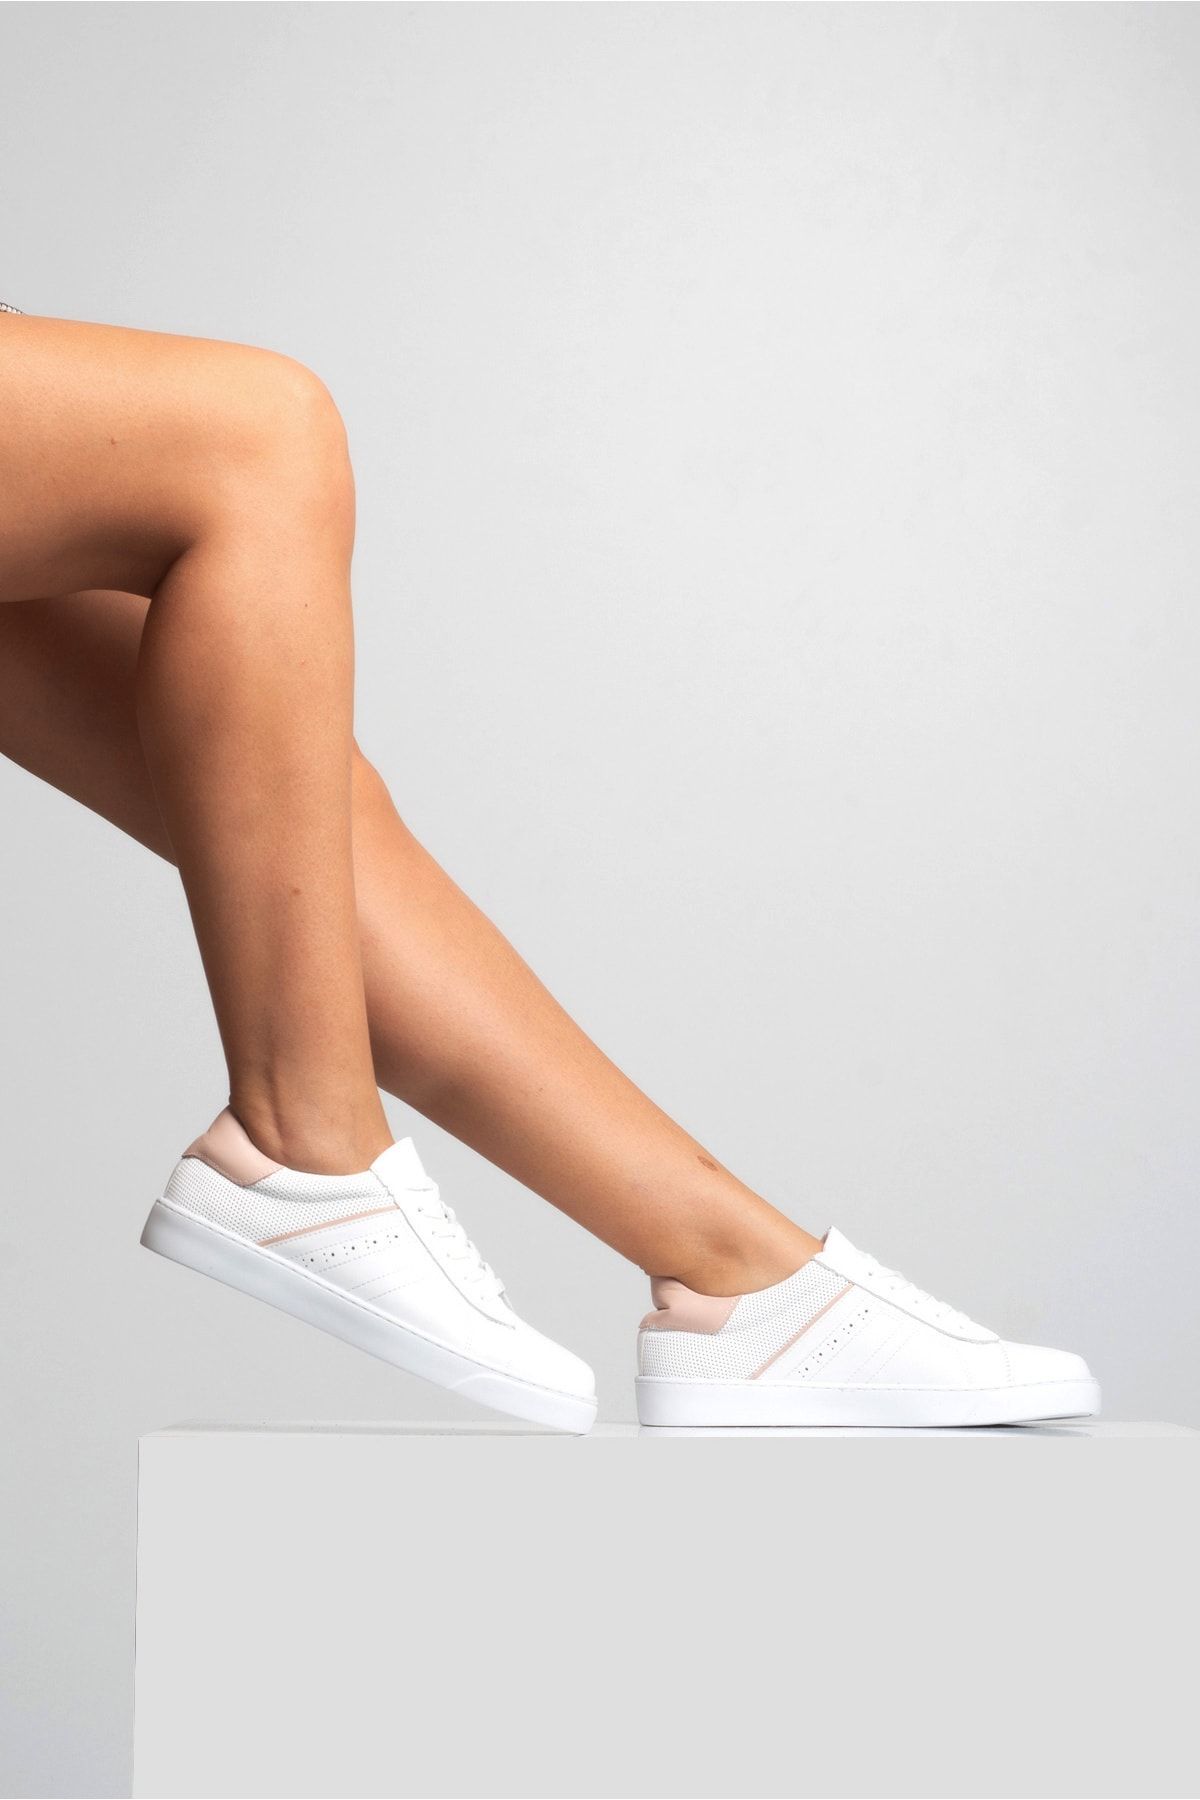 GRADA Kadın Günlük Sneaker Ayakkabı